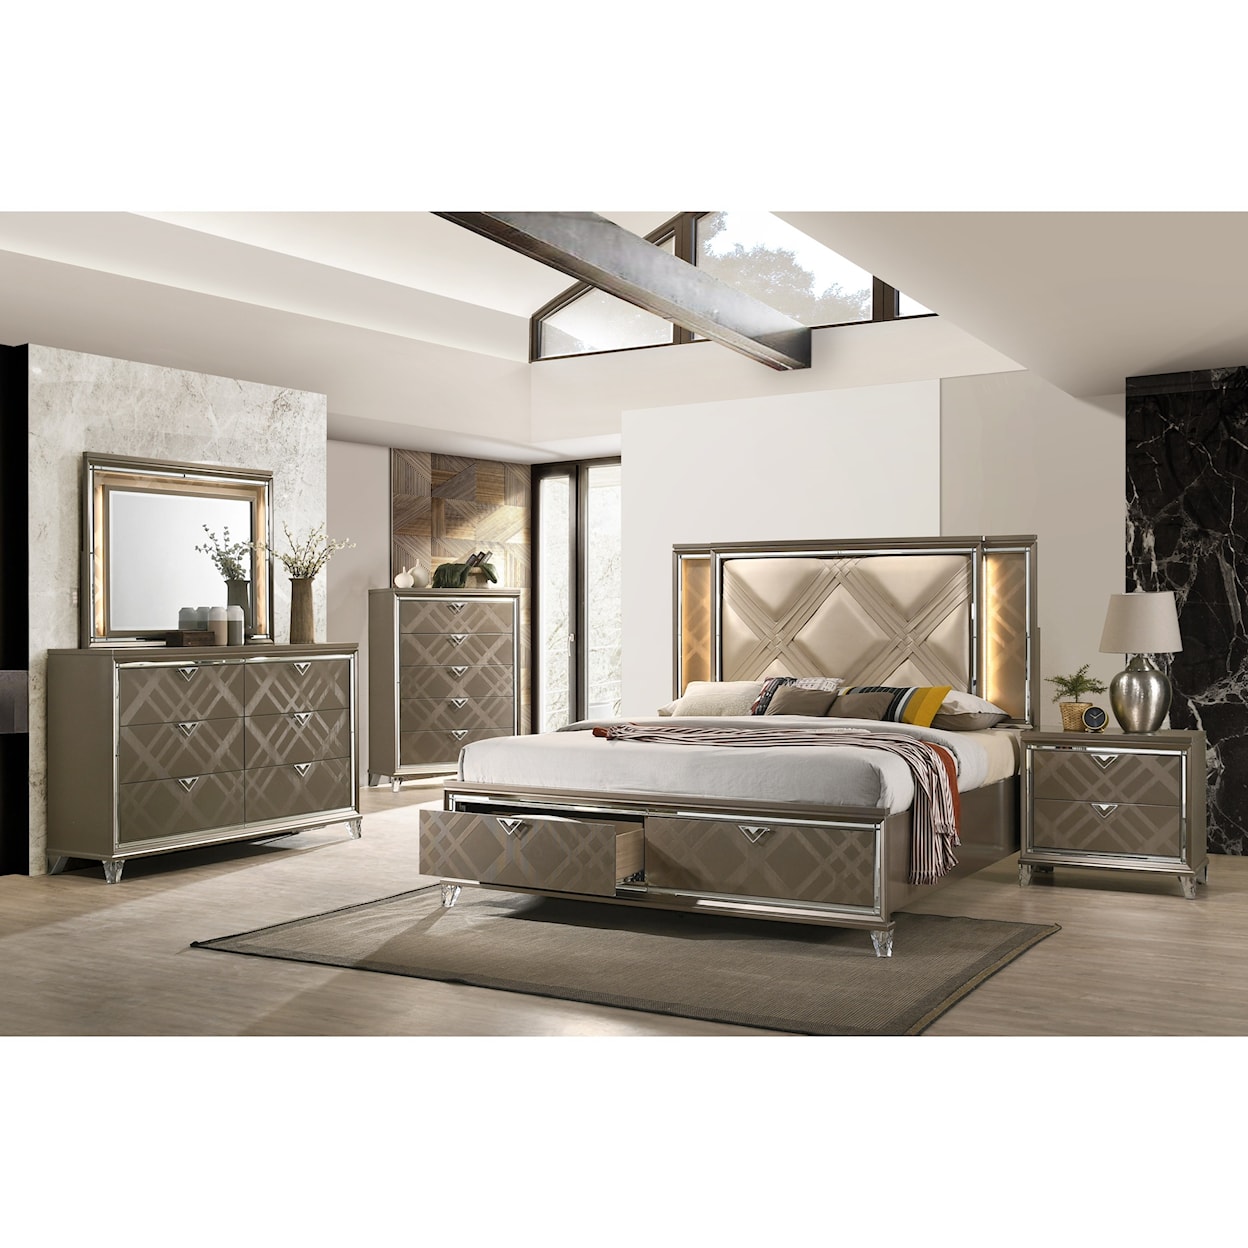 Acme Furniture Skylar 7pc Queen Bedroom Group